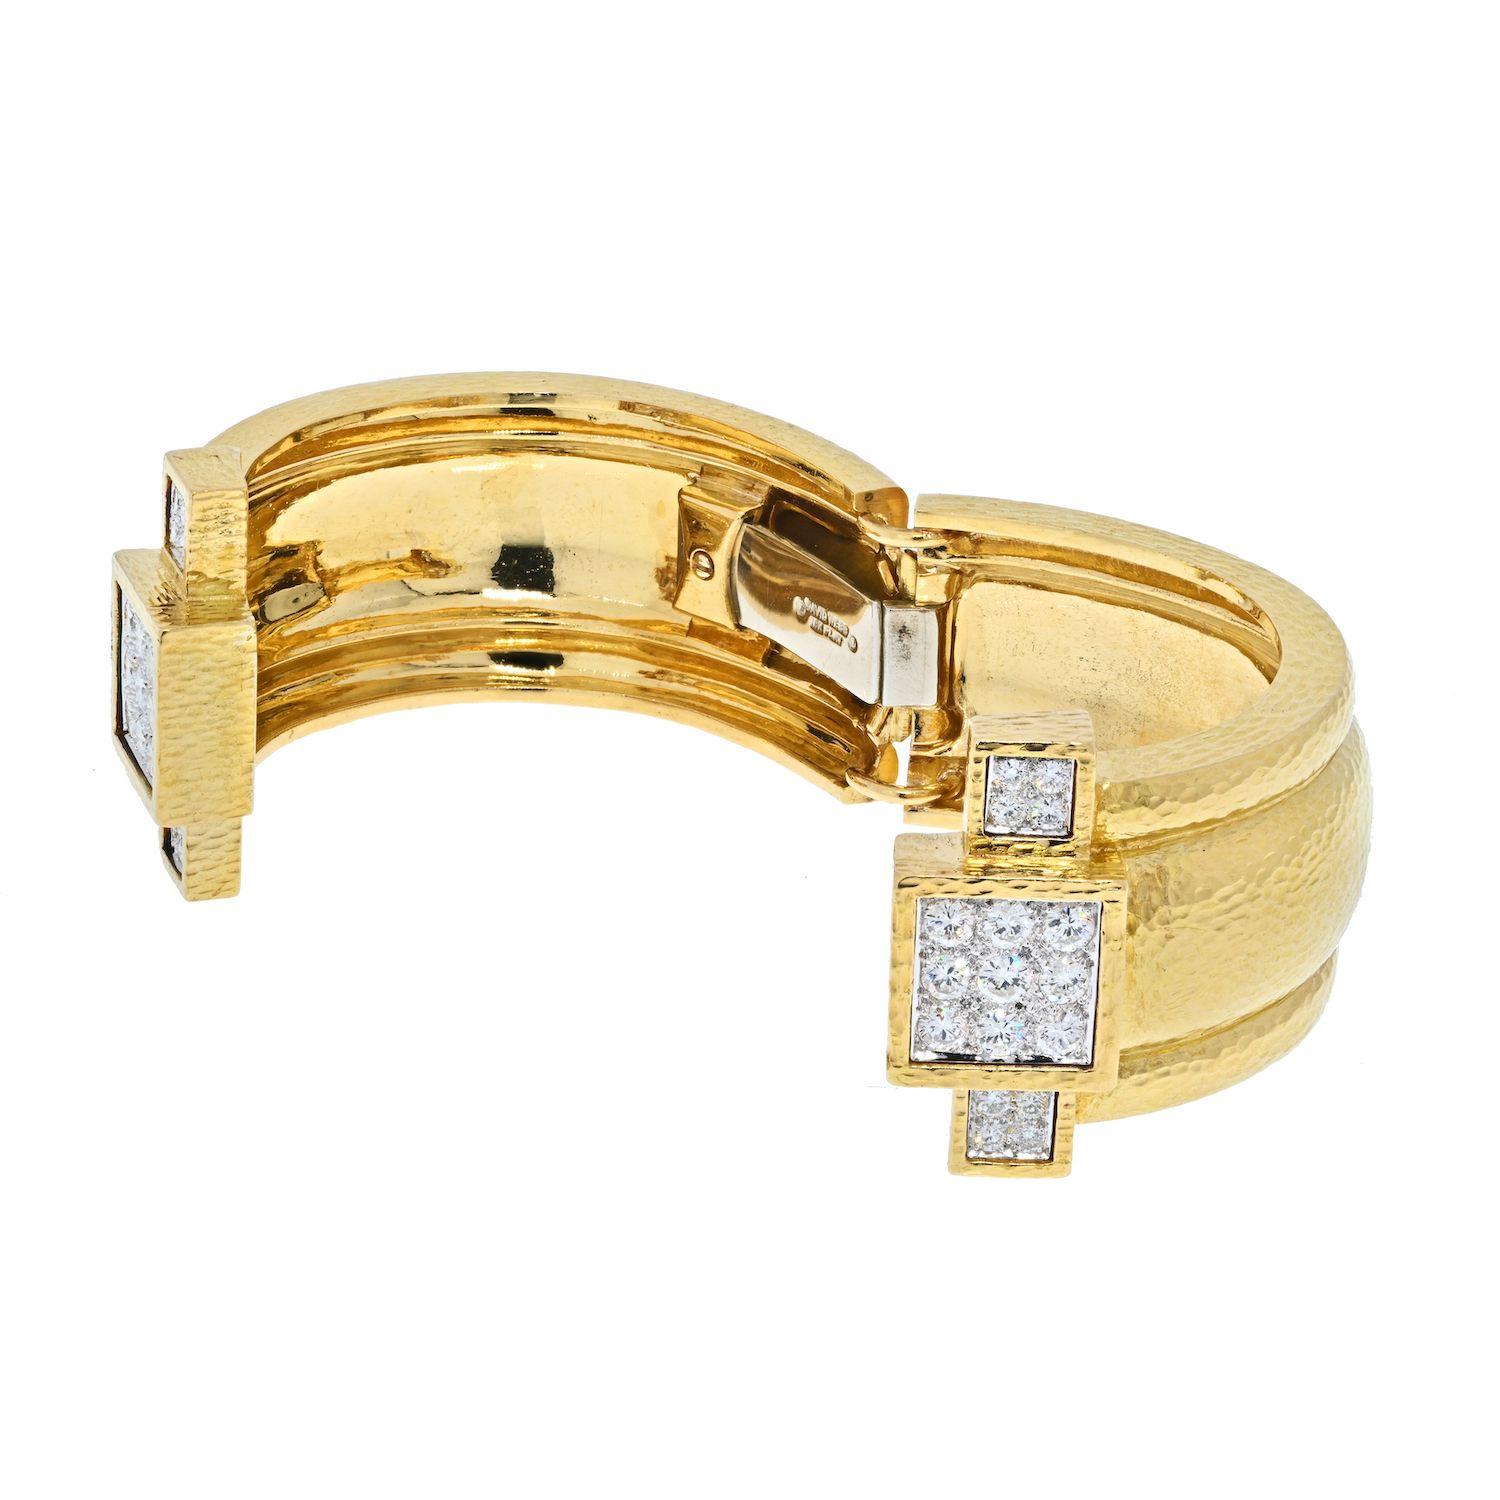 Bracelet manchette en diamant de David Webb, réalisé en or jaune 18 carats martelé et poli, de type clamper, dont les extrémités sont rehaussées de diamants ronds de taille brillant, sertis en platine.
Largeur du bracelet : environ 1 pouce. 
Poids